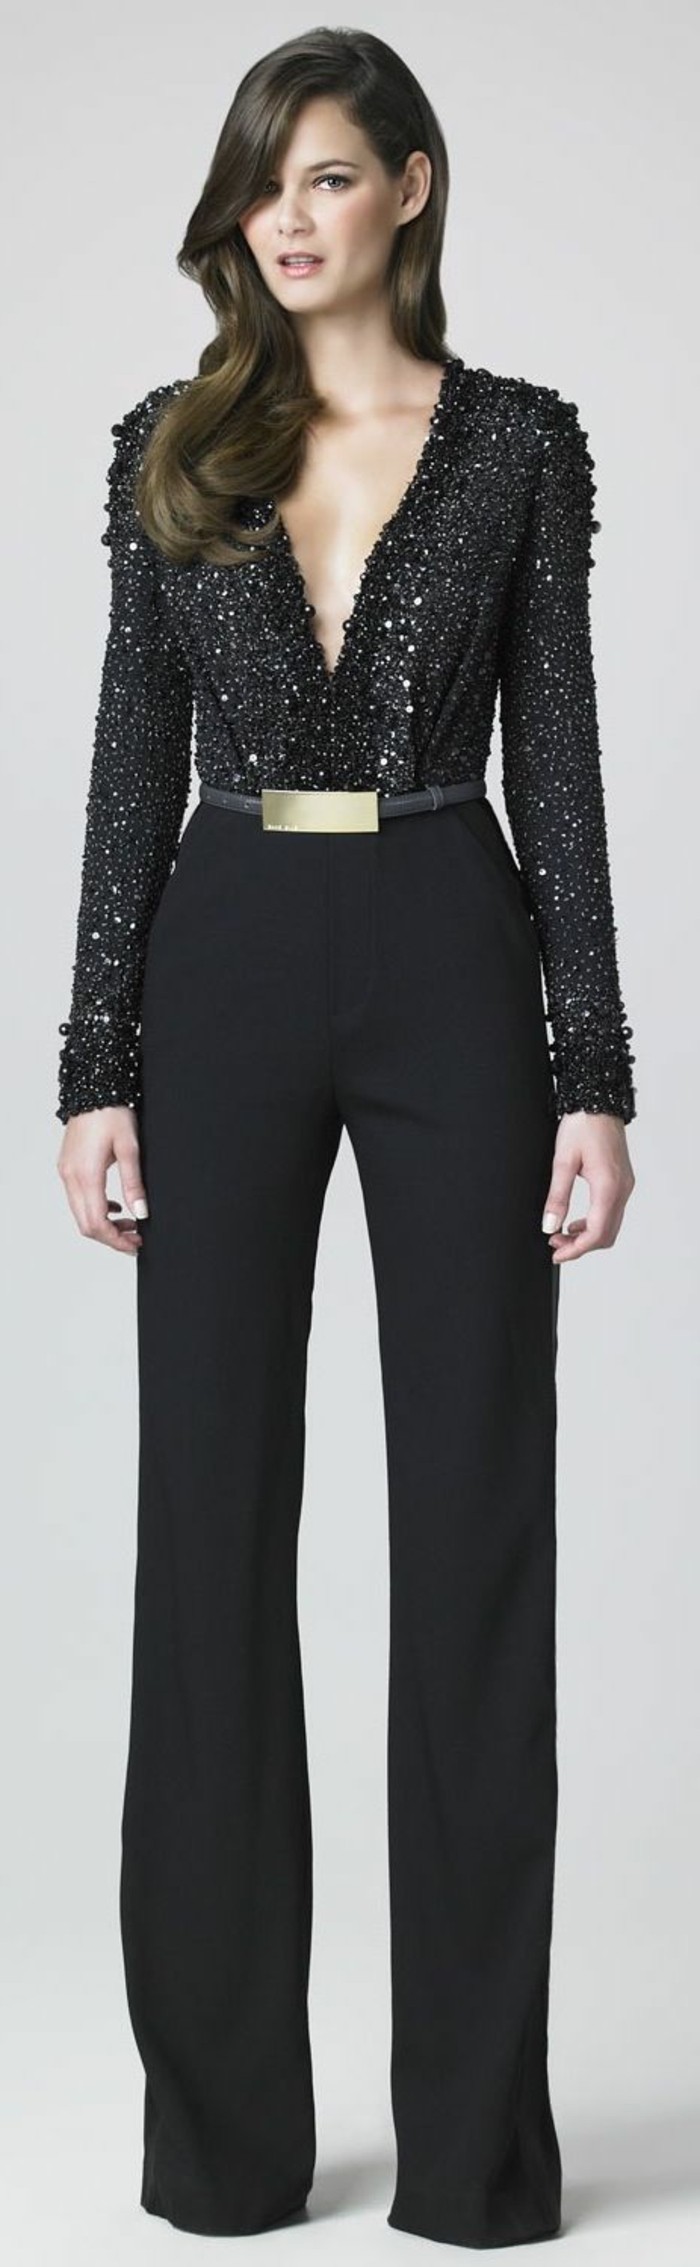 9-šik-dress-crno-košulja hlače i zlato-guertel-glitter-efekt-MITEL duge kose